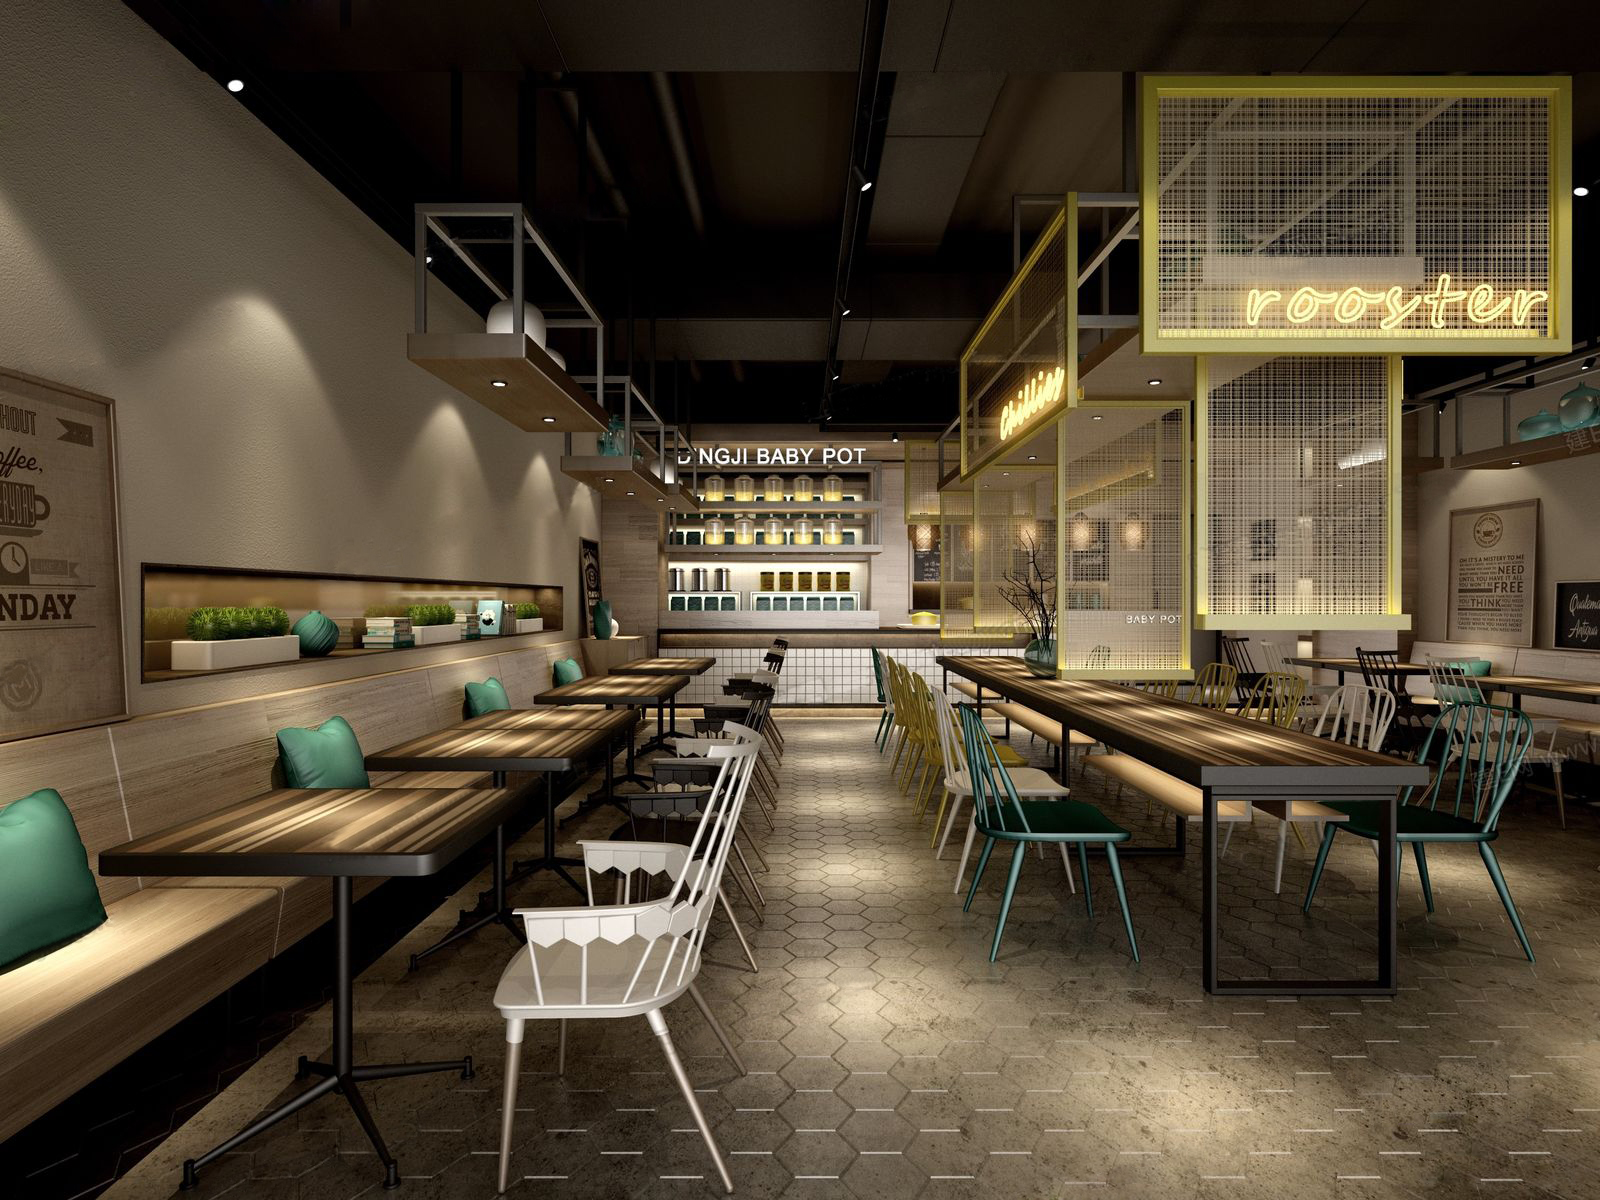 3dmax模型 中西餐厅咖啡厅茶楼店面loft工业风格3d室内模型素材 3D模型-第6张